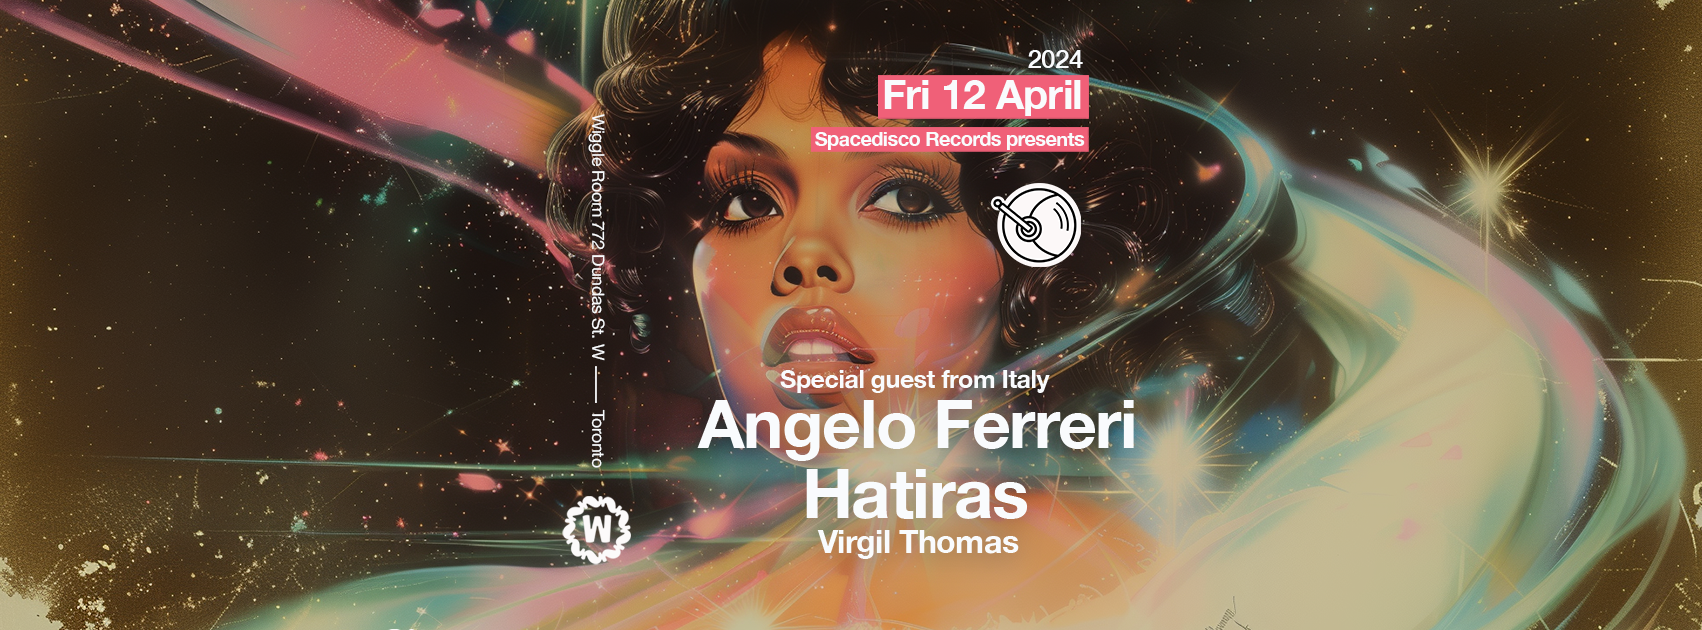 Angelo Ferreri + Hatiras Spacedisco Records April 12 - Página trasera